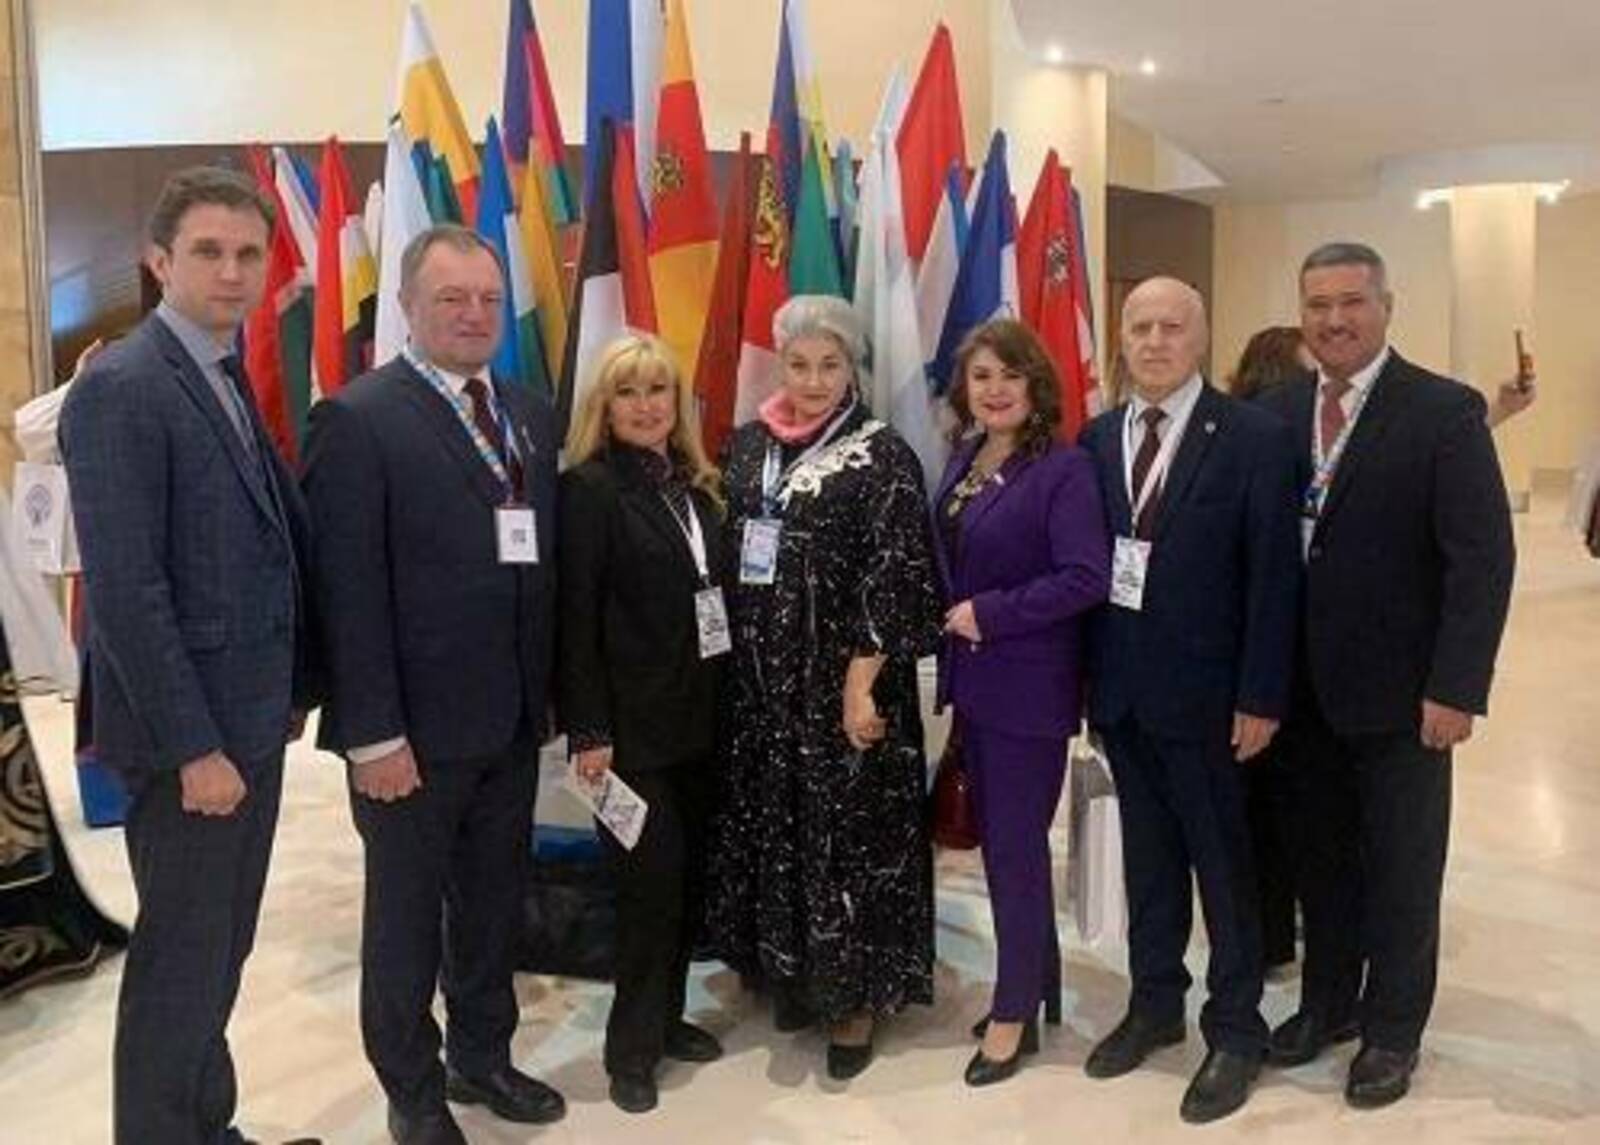 Представители Башкортостана участвуют в Форуме национального единства в Ханты-Мансийске